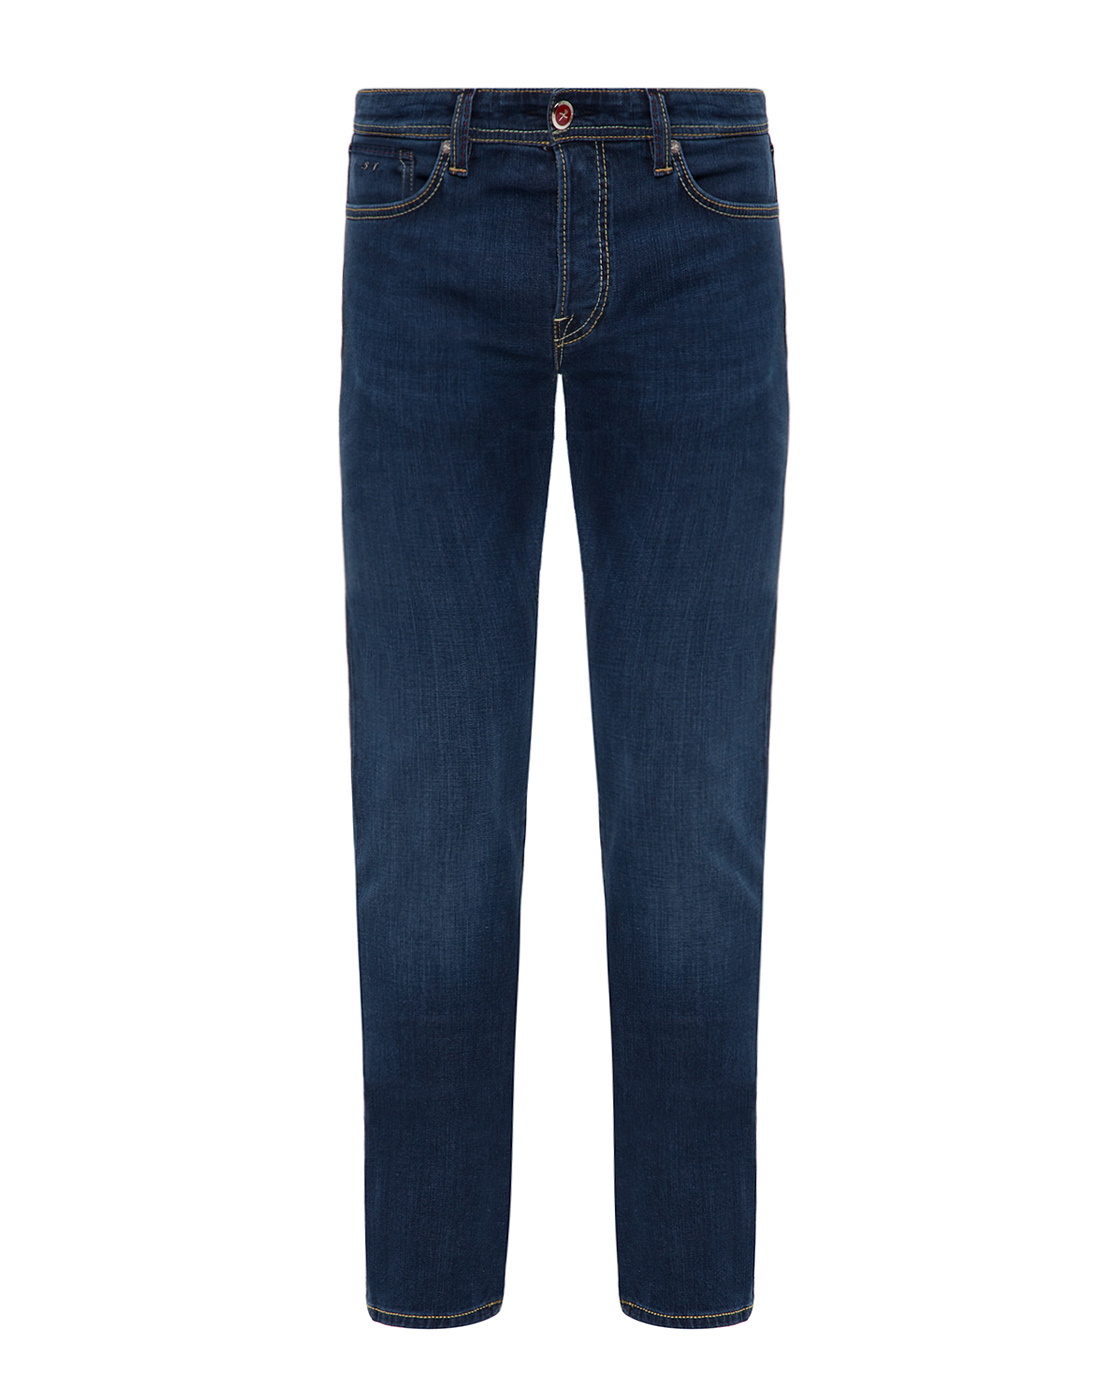 Мужские темно-синие джинсы Leonardo Tramarossa SD361 6MON LEO-1